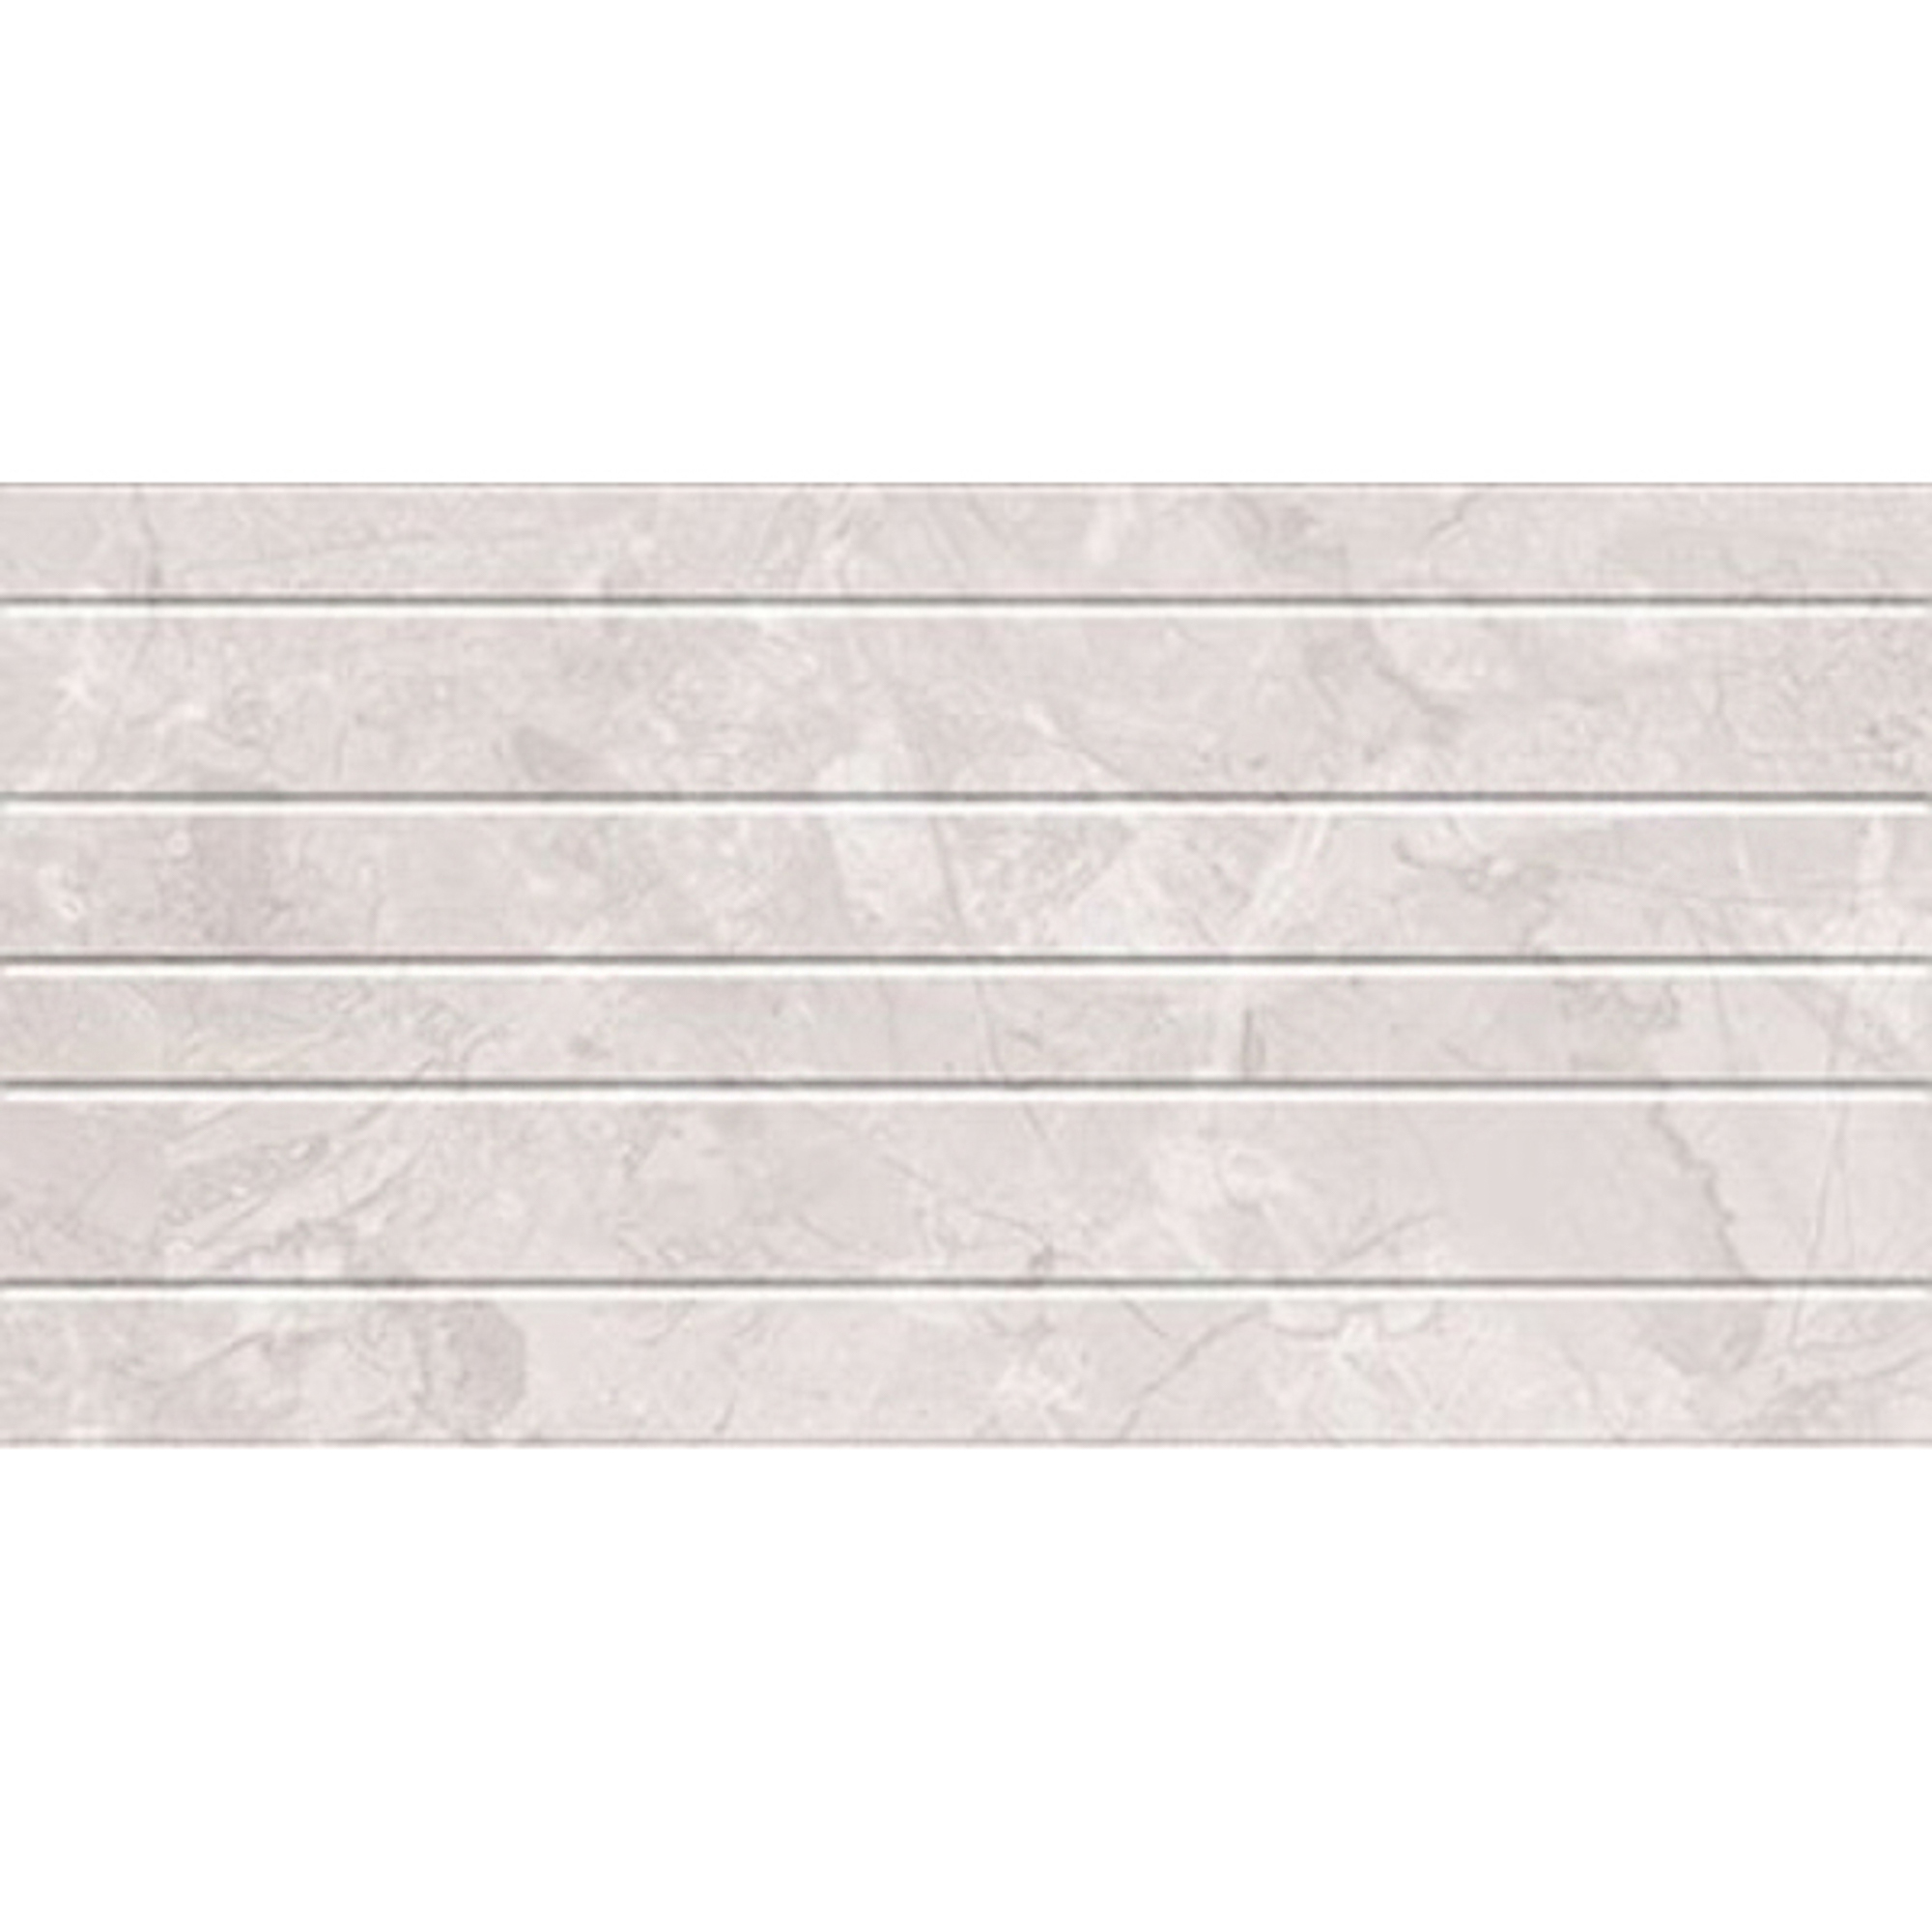 Плитка Kerlife Delicato Linea Perla 31,5x63 см плитка kerlife olimpia crema 31 5x63 см